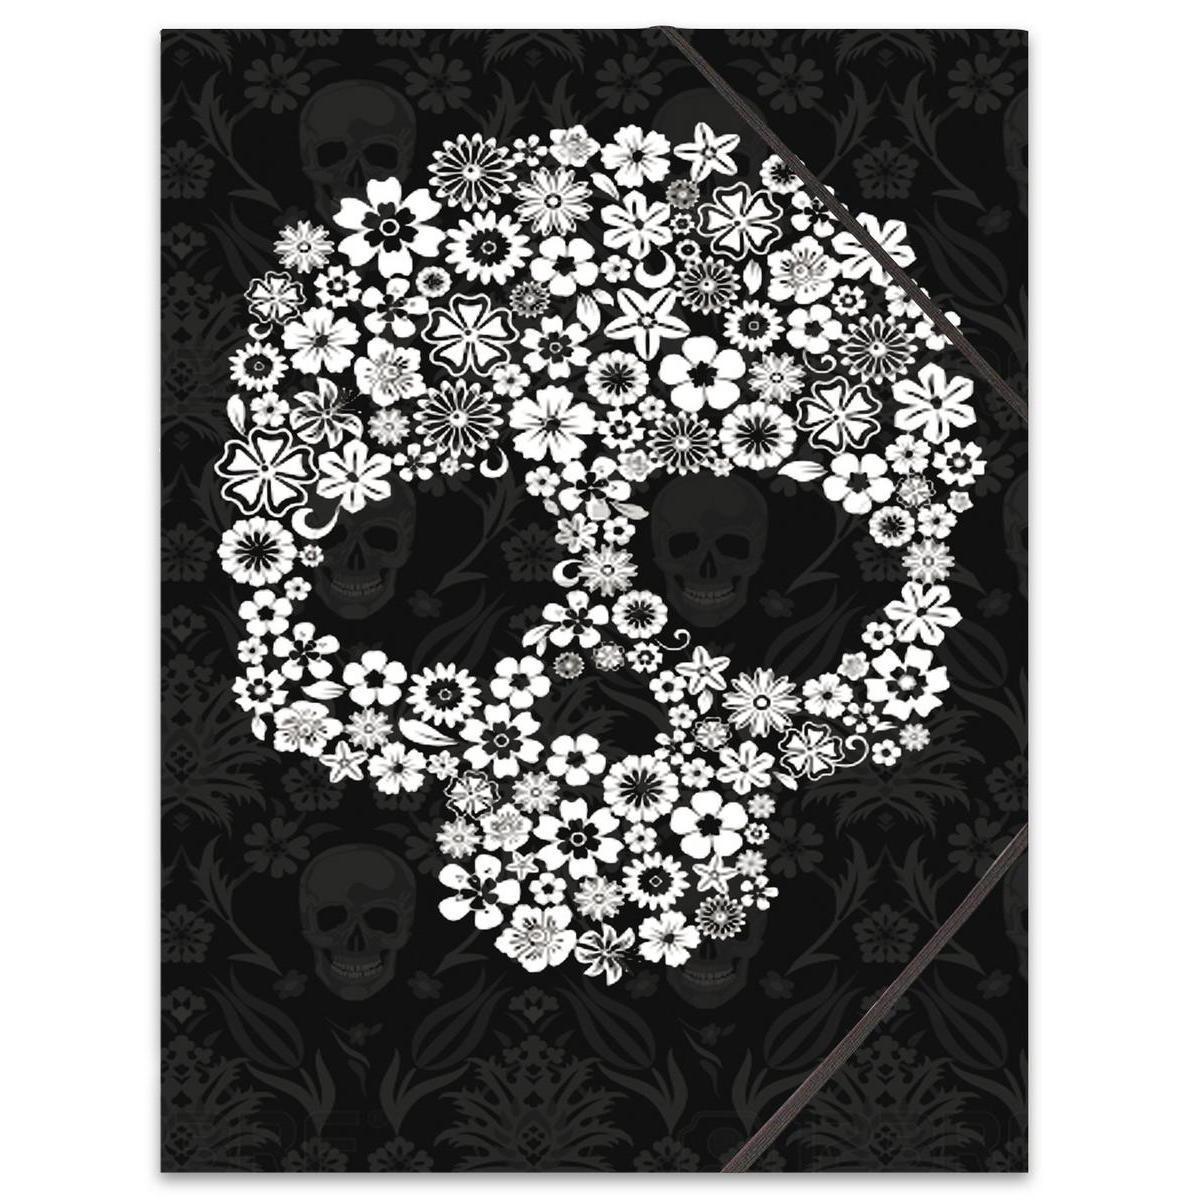 Pochette à rabats tête de mort fleurie - Carton souple - 24 x H 32 cm - Noir et blanc